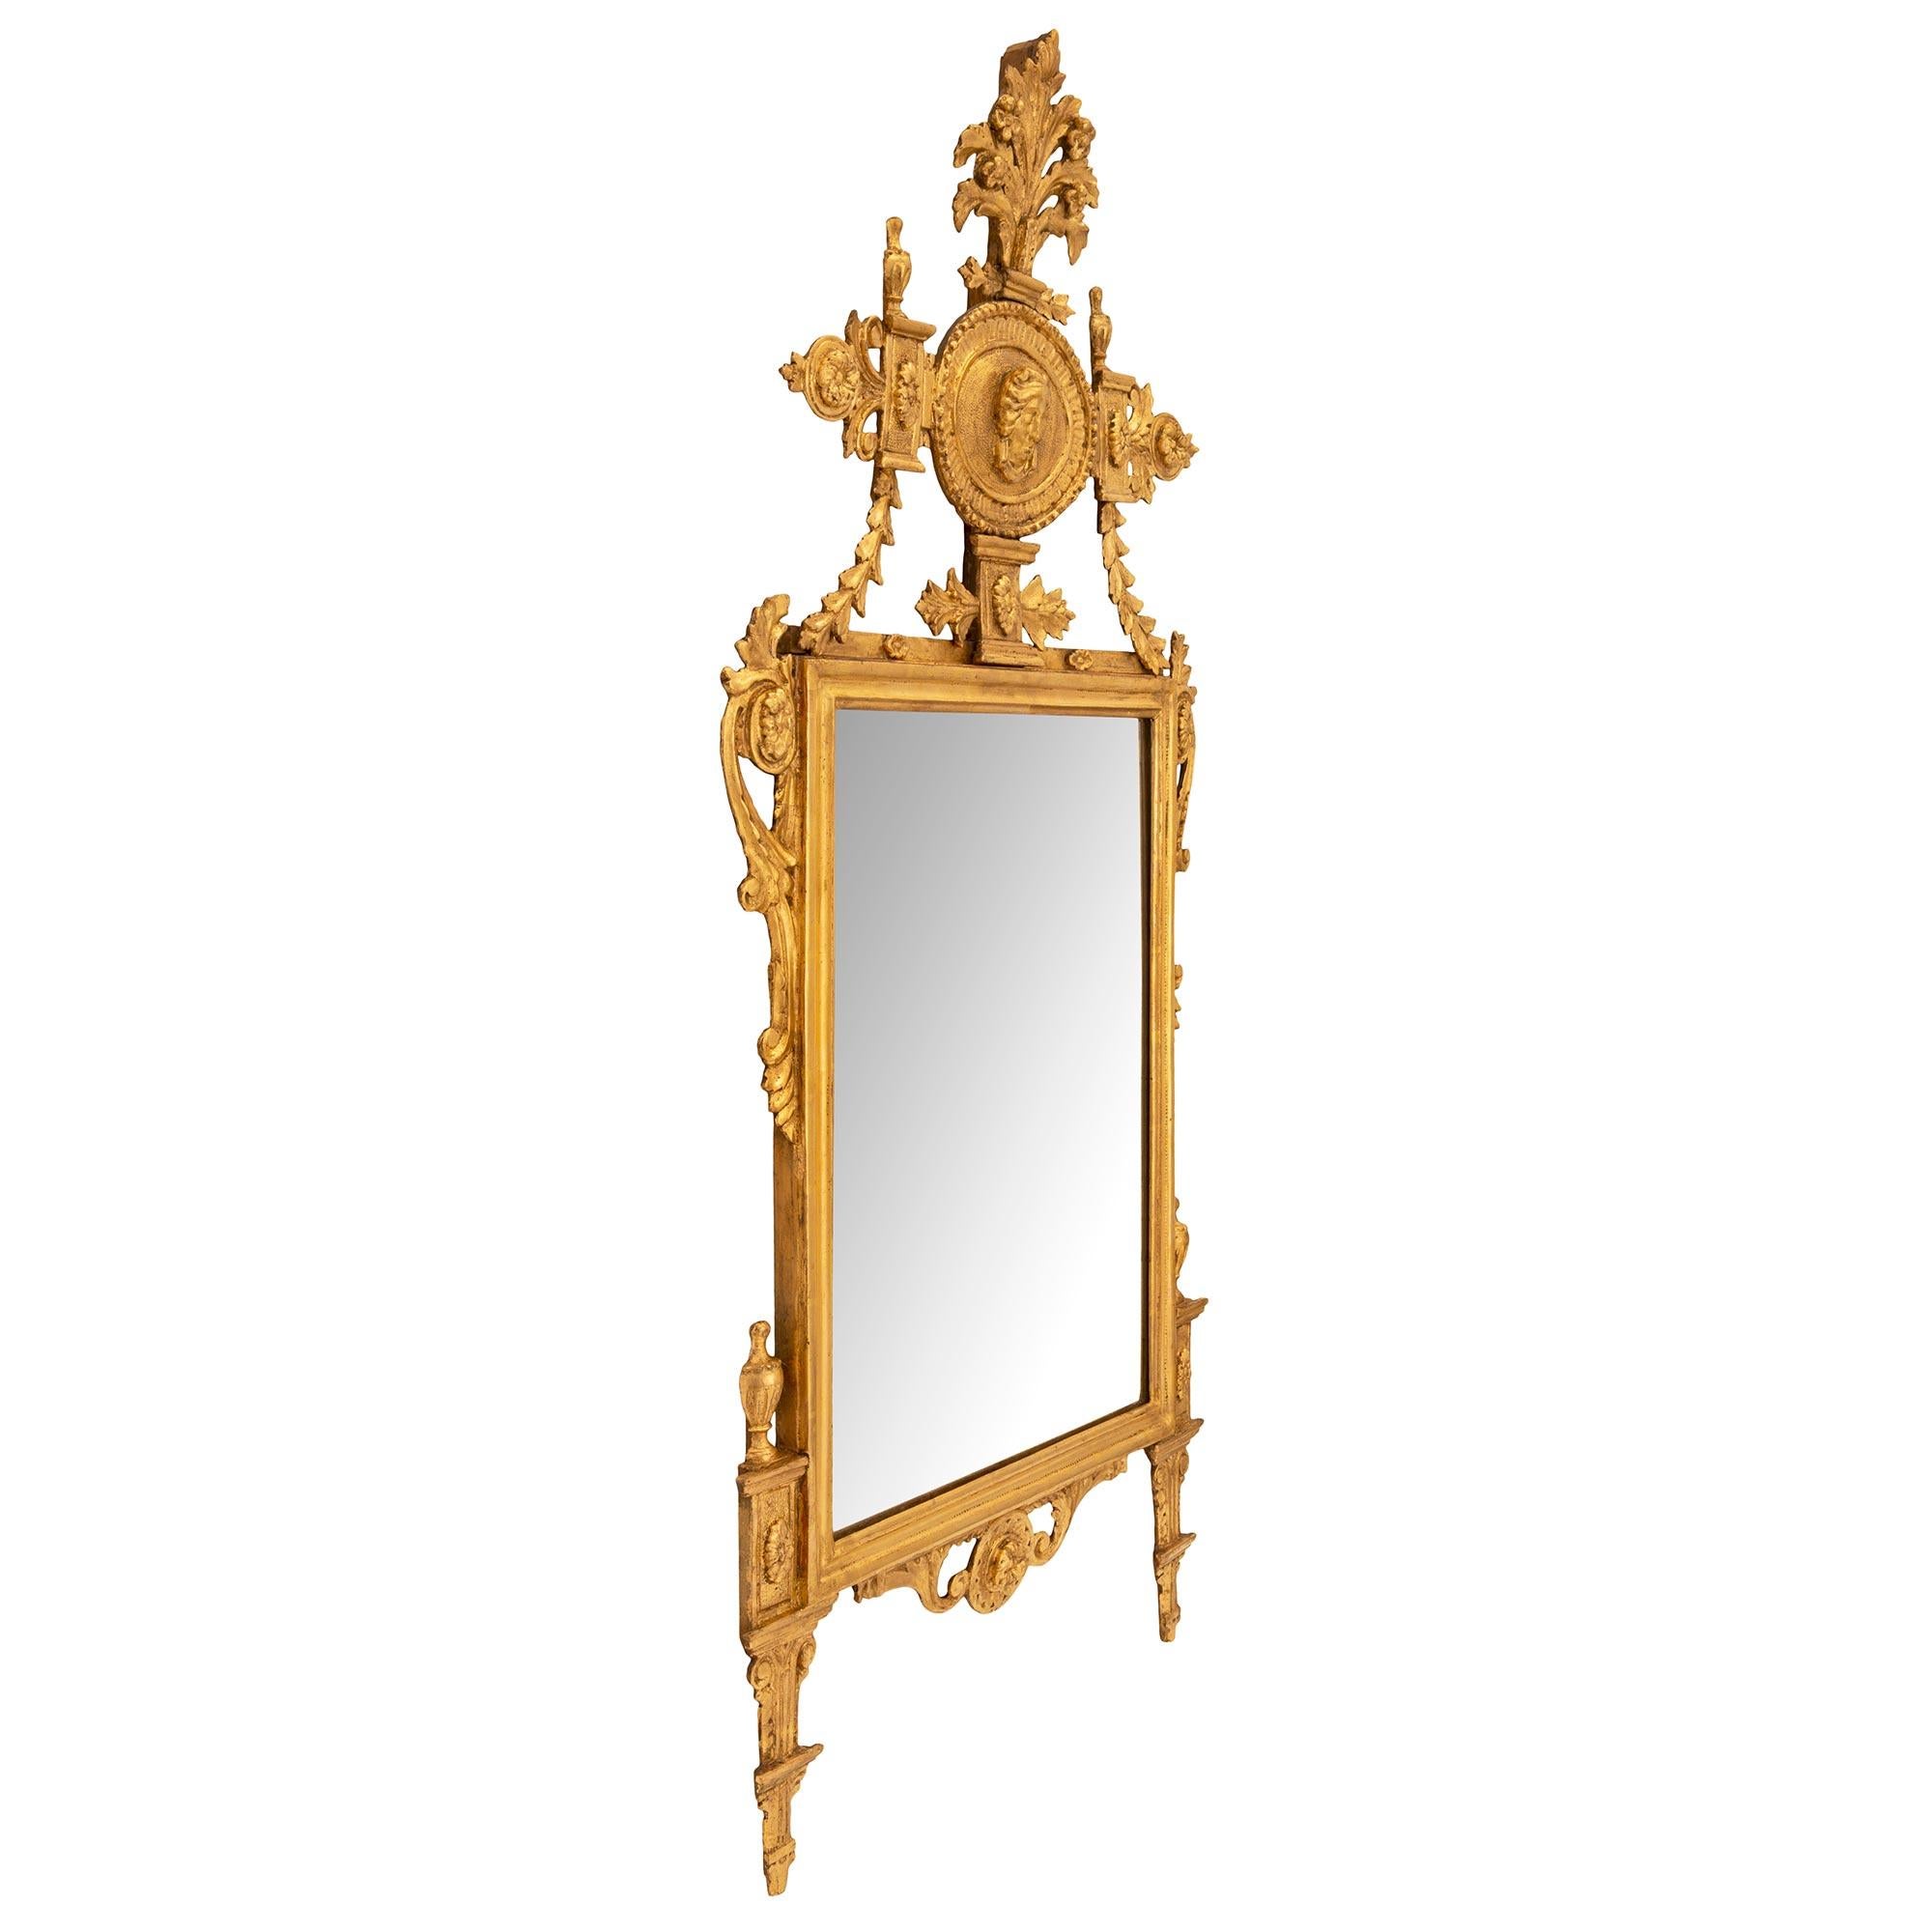 Un exceptionnel et très unique miroir italien néo-classique du 18ème siècle en bois doré. Le miroir a conservé sa plaque d'origine dans un élégant bandeau marbré. La base est centrée par une charmante réserve florale circulaire richement sculptée,